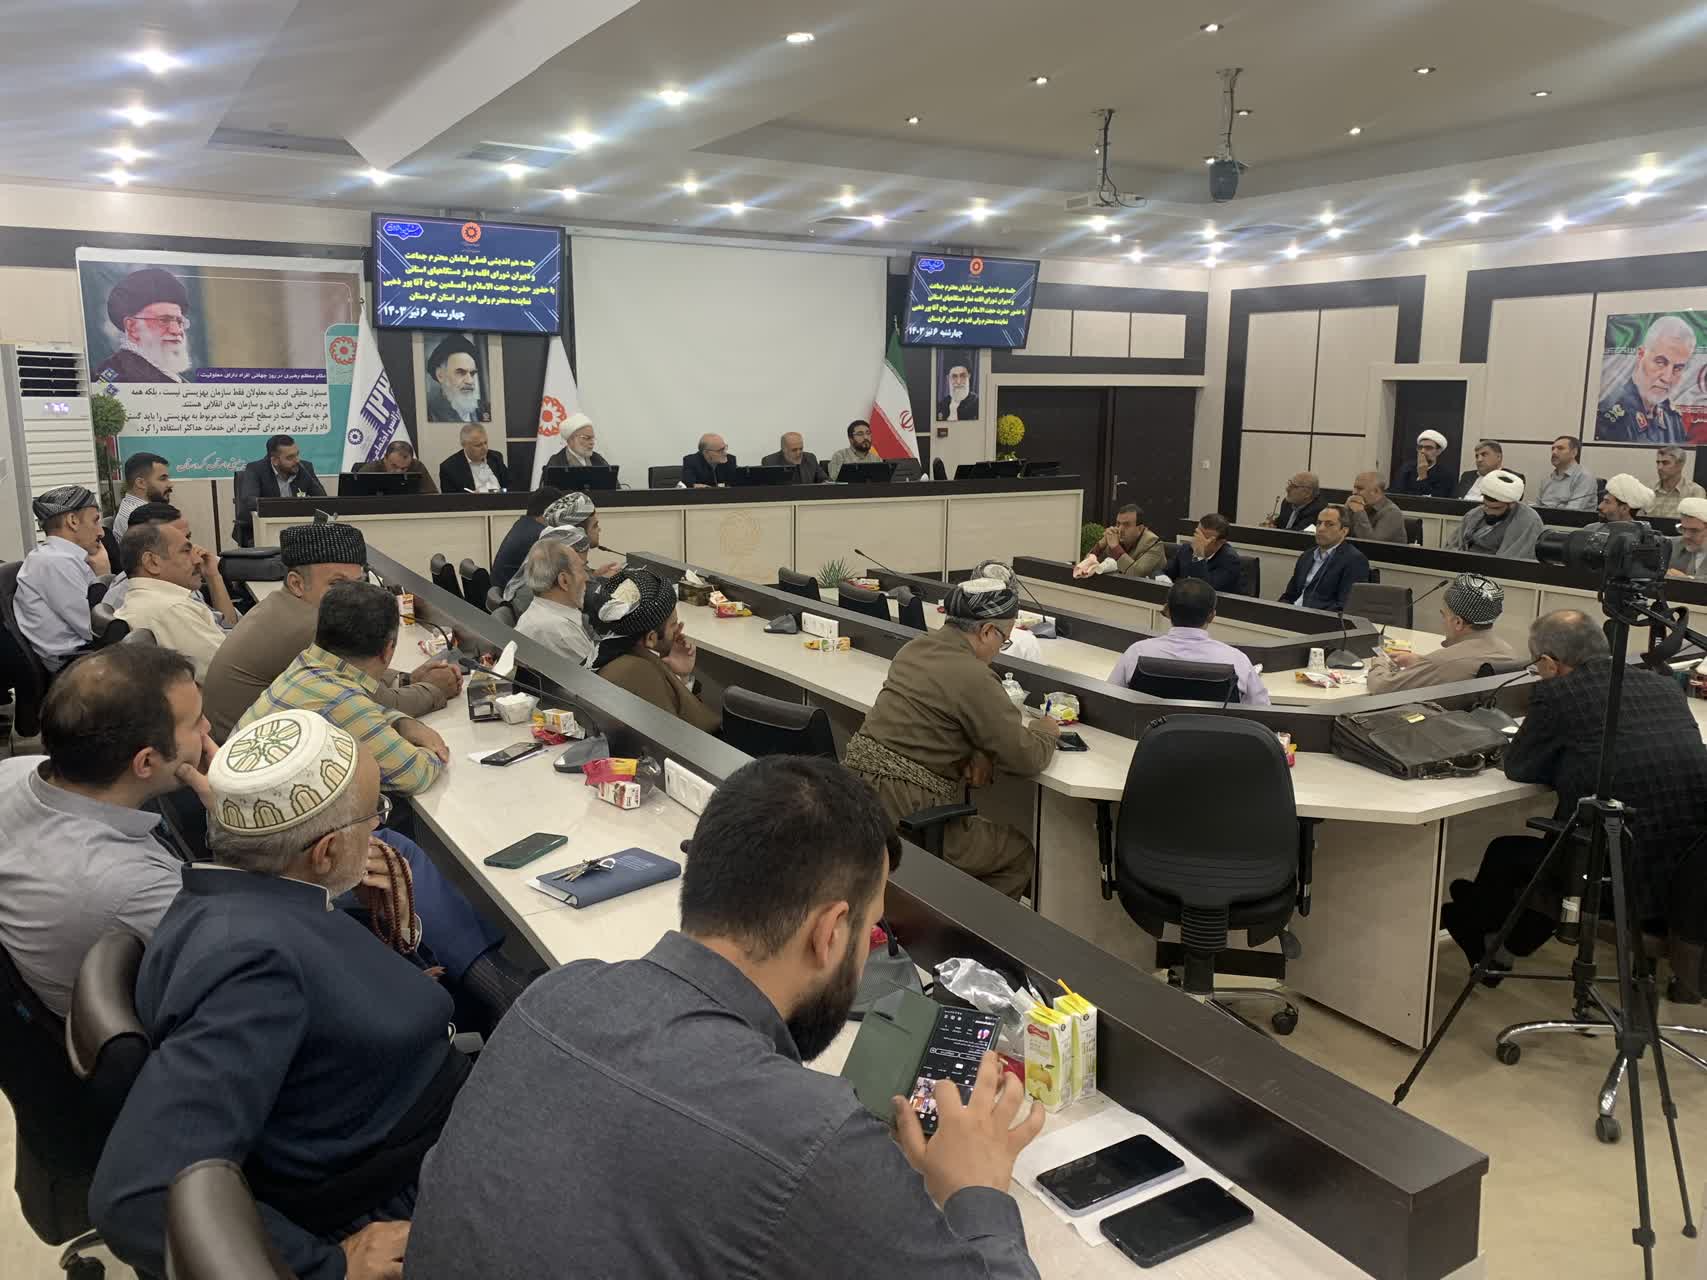 گردهمایی آموزشی،توجیهی ائمه جماعت و دبیران شورای اقامه نماز در کردستان برگزار شد.